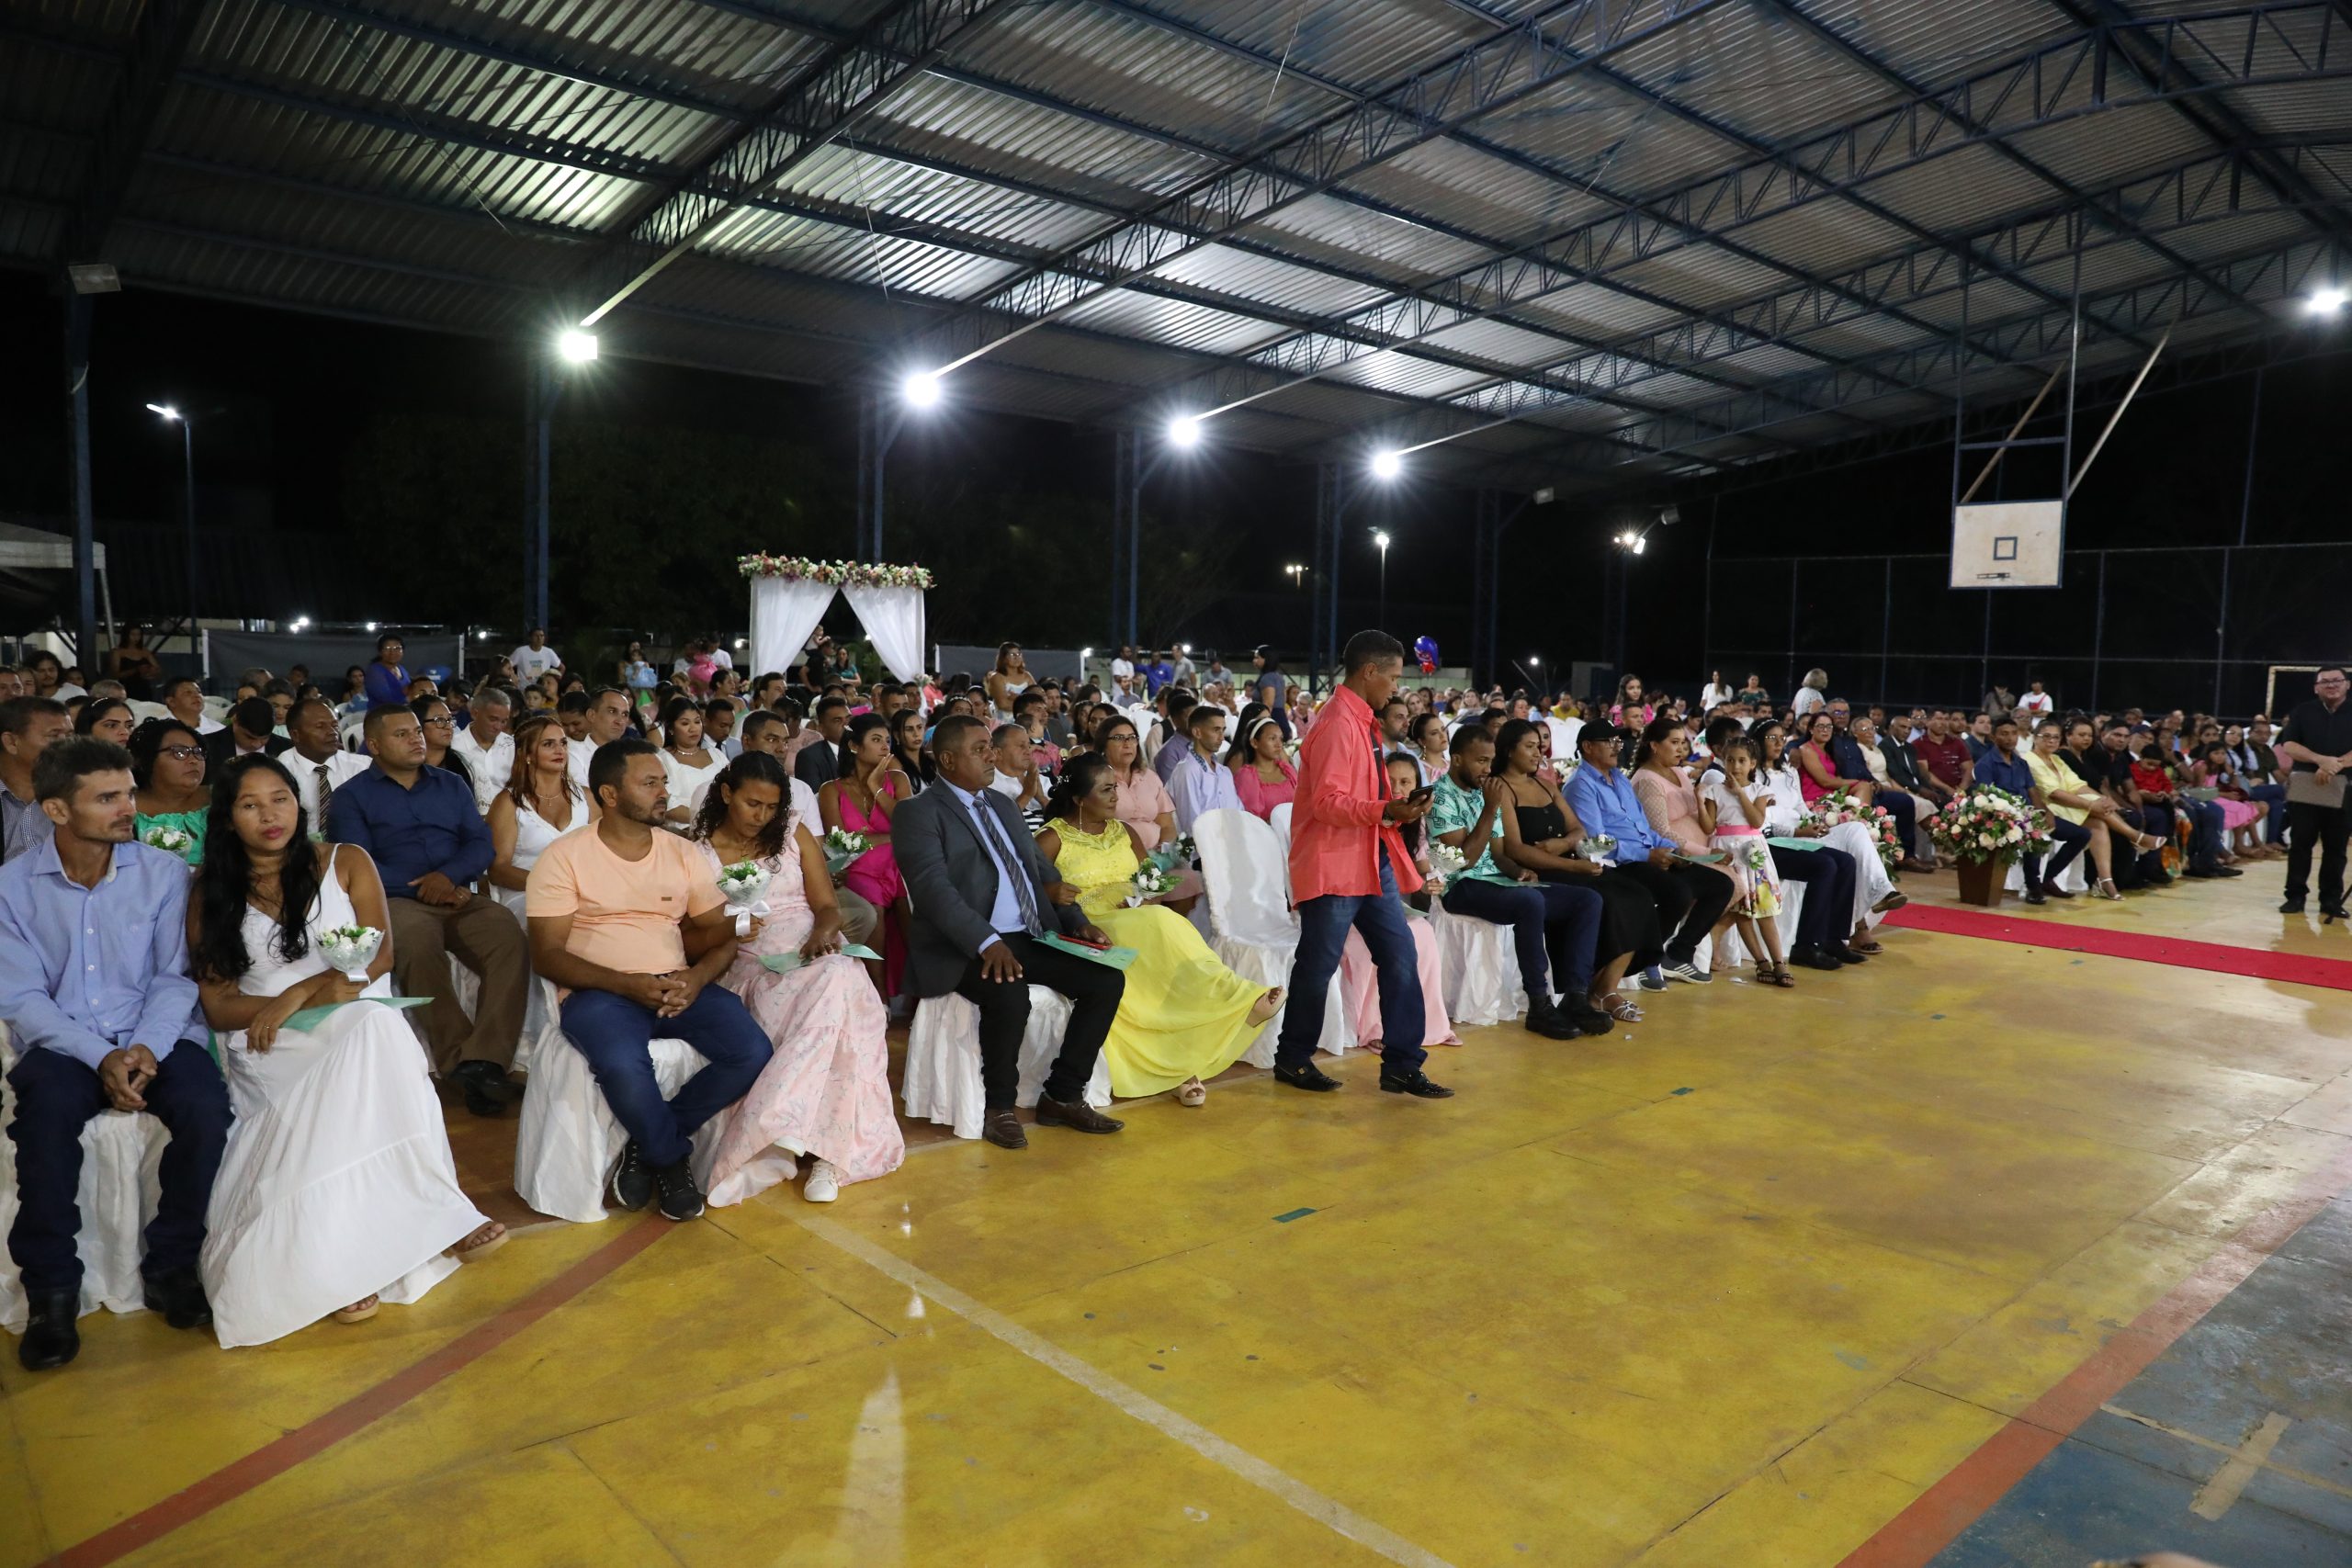 Defensoria Pública realiza 50 casamentos em Rorainópolis durante cerimônia coletiva